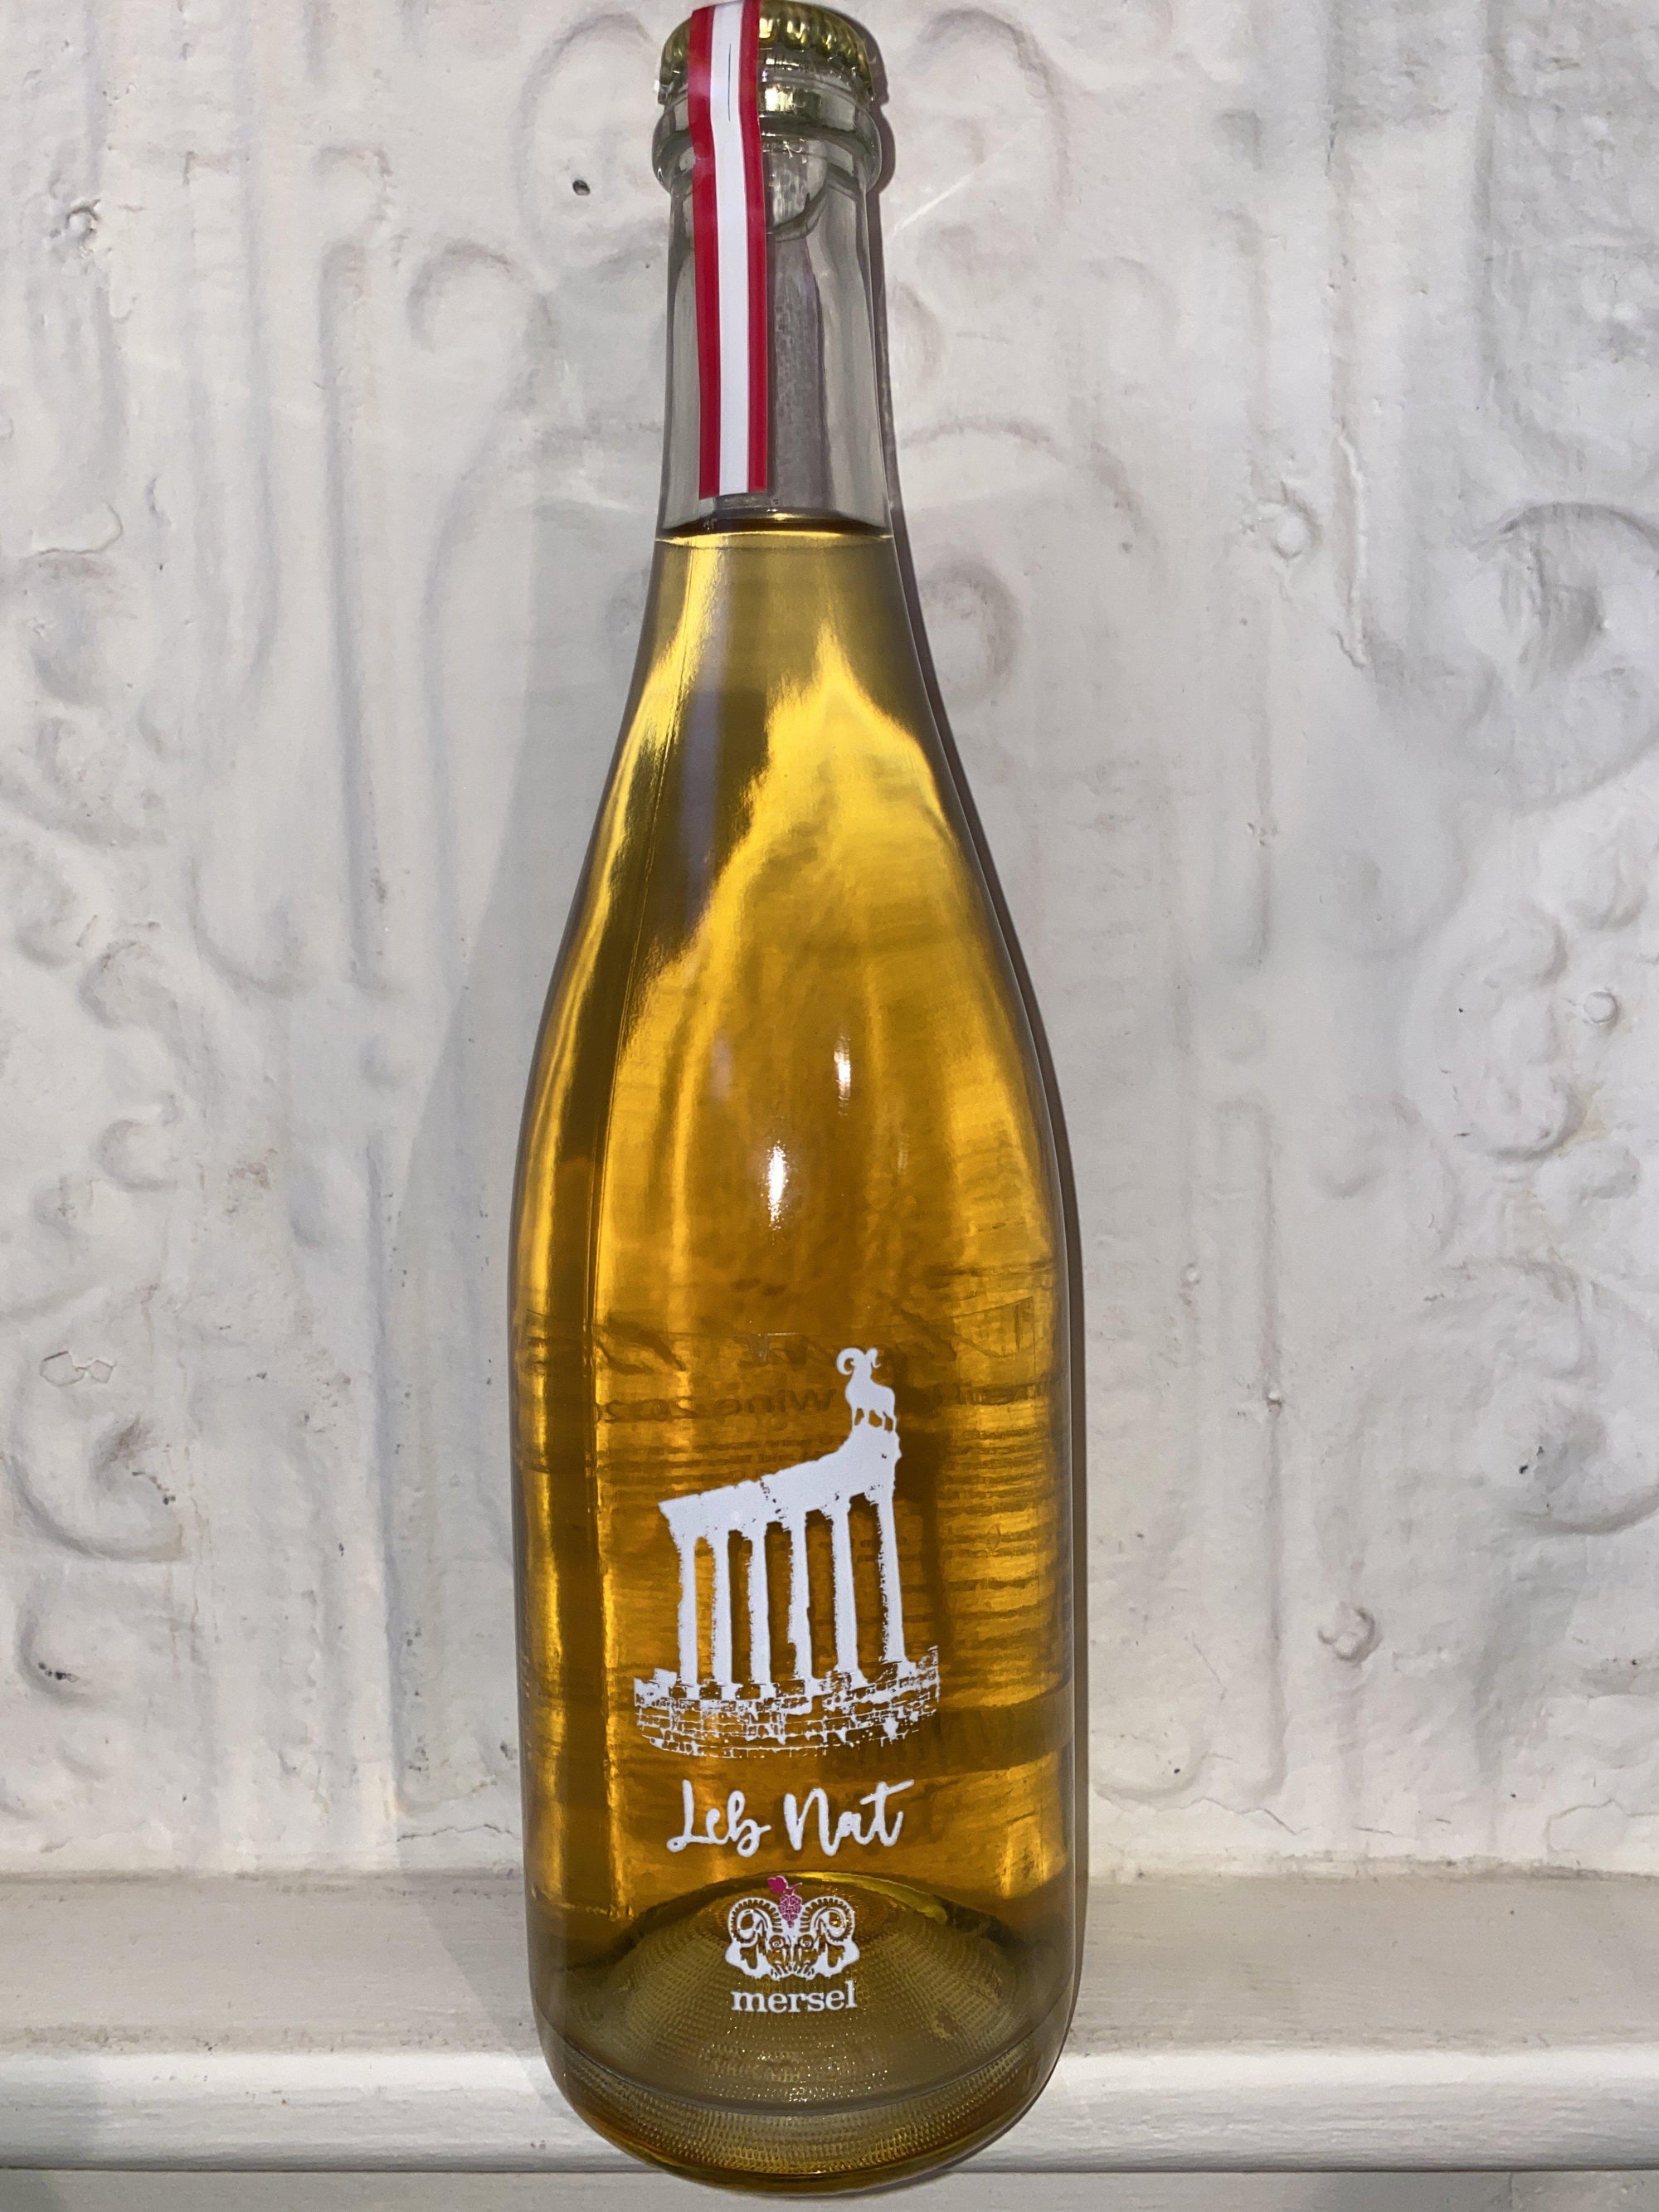 Leb Nat Gold, Mersel Wines 2020 (Bekka Valley, Lebanon)-Wine-Bibber & Bell